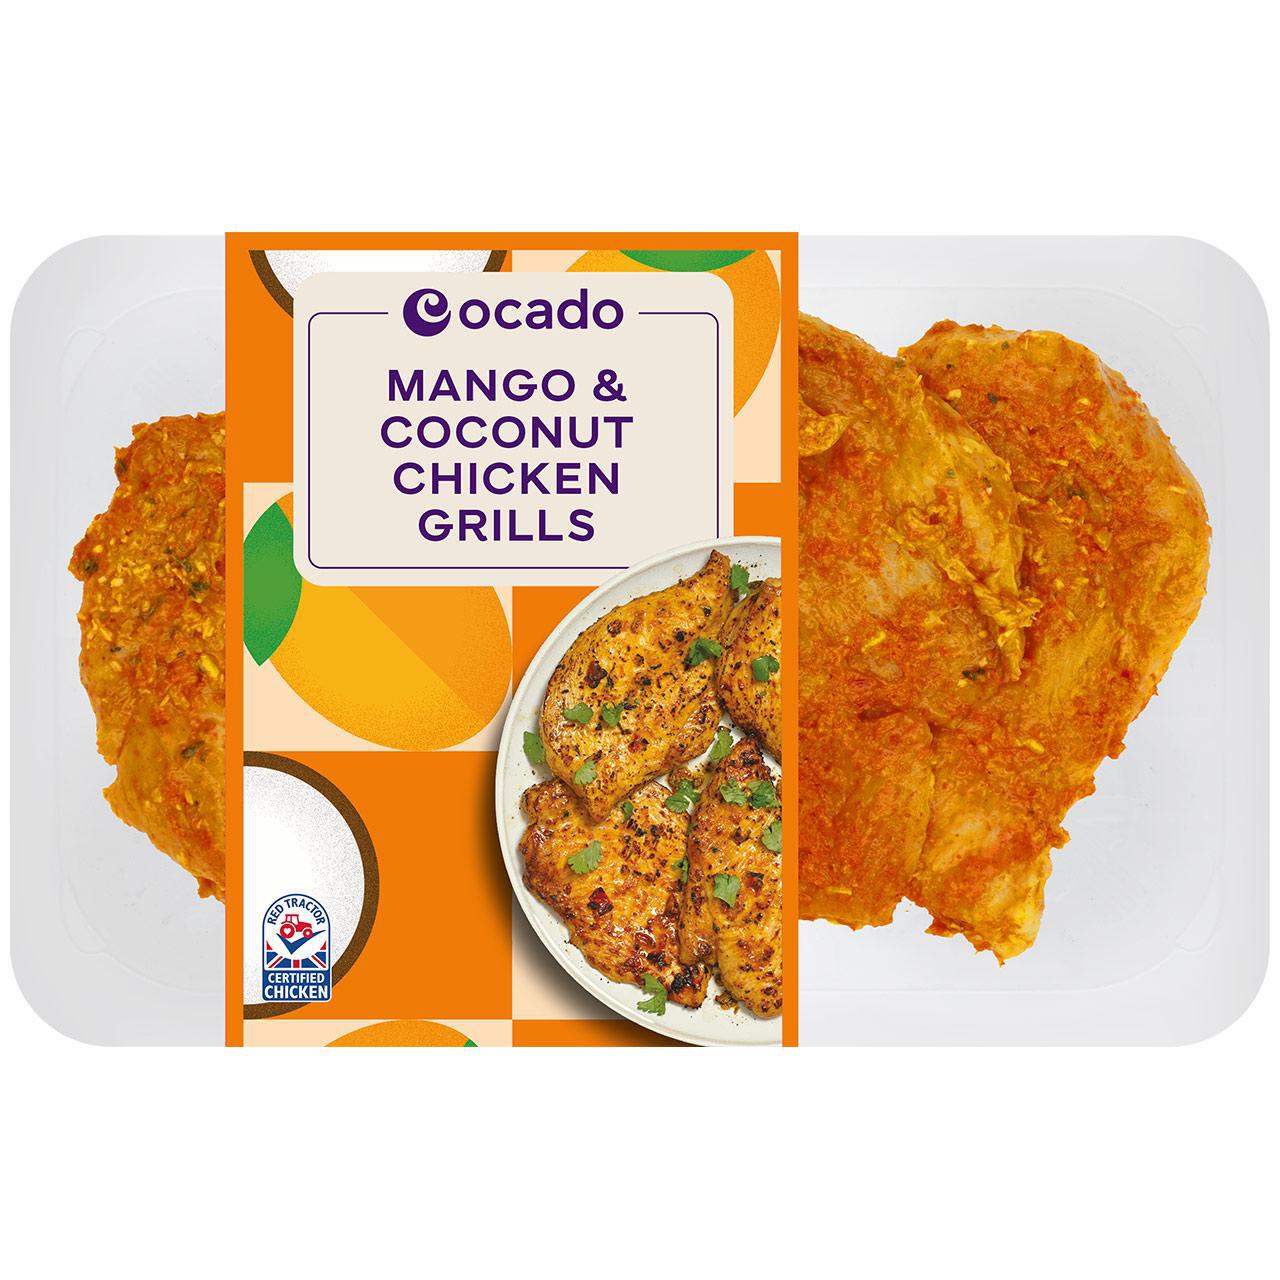 Ocado Mango & Coconut Chicken Grills 330g